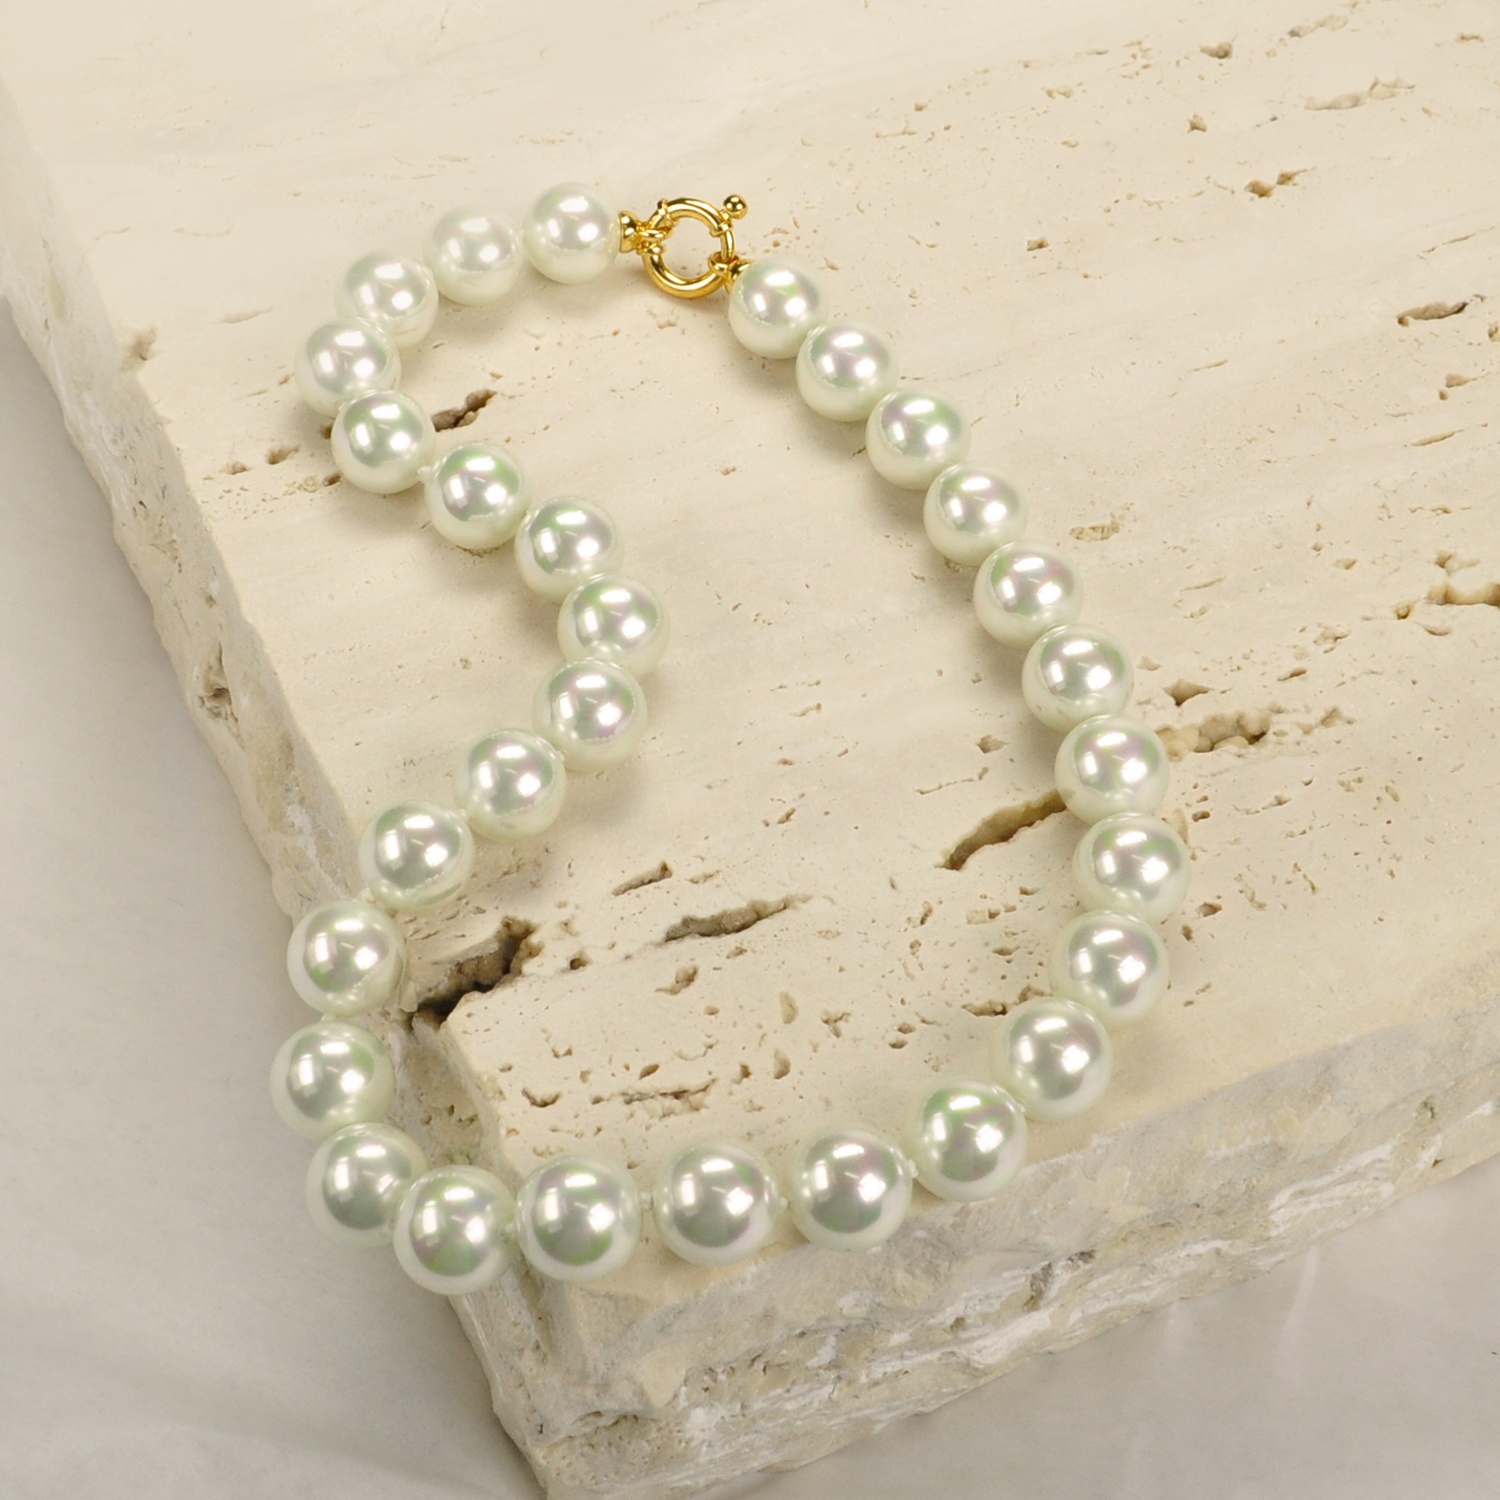 Collar clásico de Perlas de 14 mm.